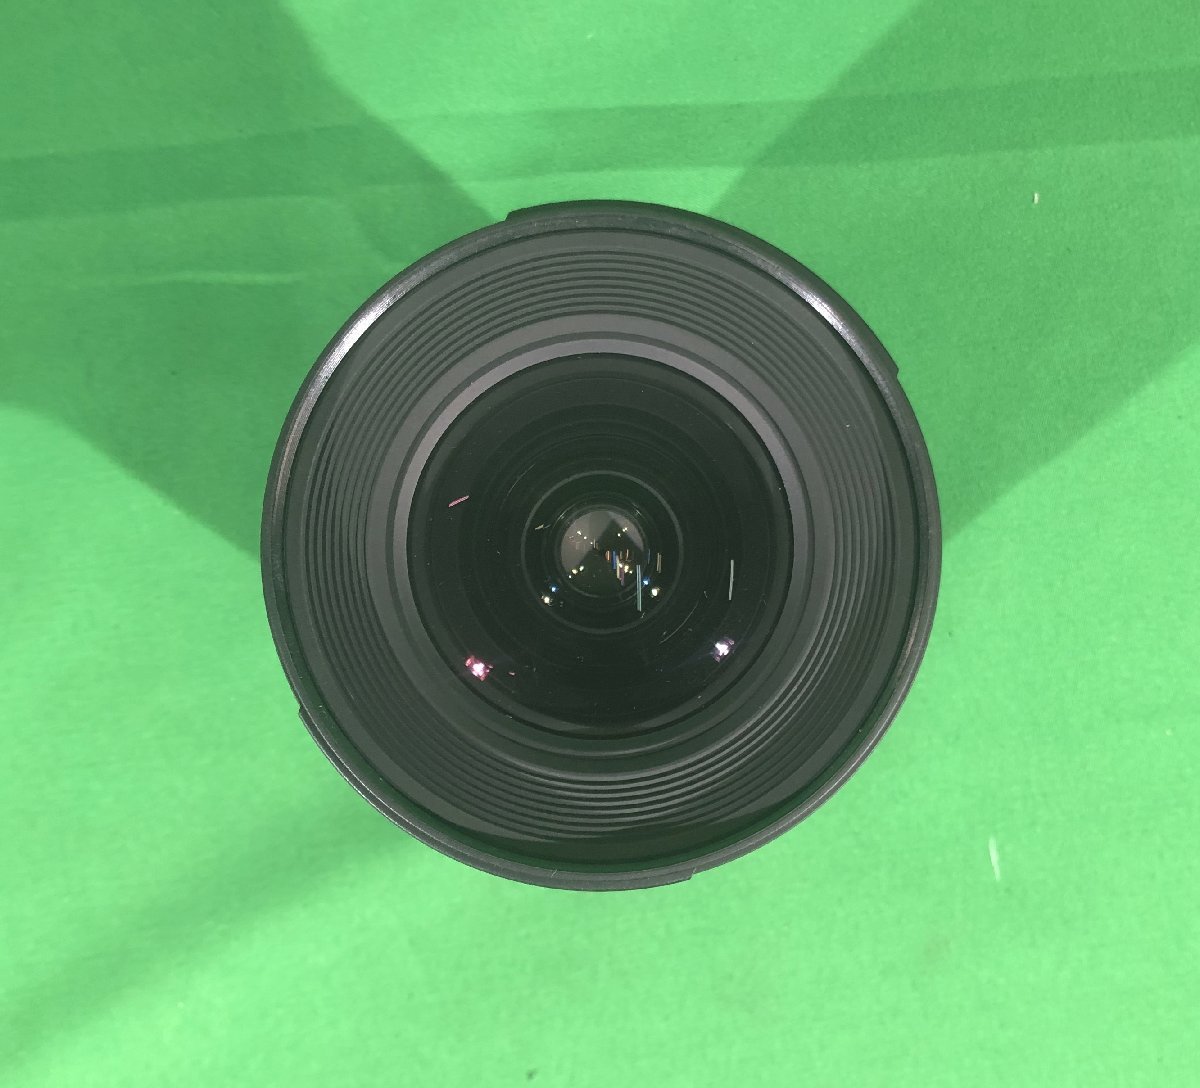 [ Saitama departure ][Nikon,SLIK,SIGMA] tripod lens set AF-snikkor 20mm f/1.8 / 24-70mm F2.8 IF EX DG HSM / PROFESSIONALIIN (9-1494)